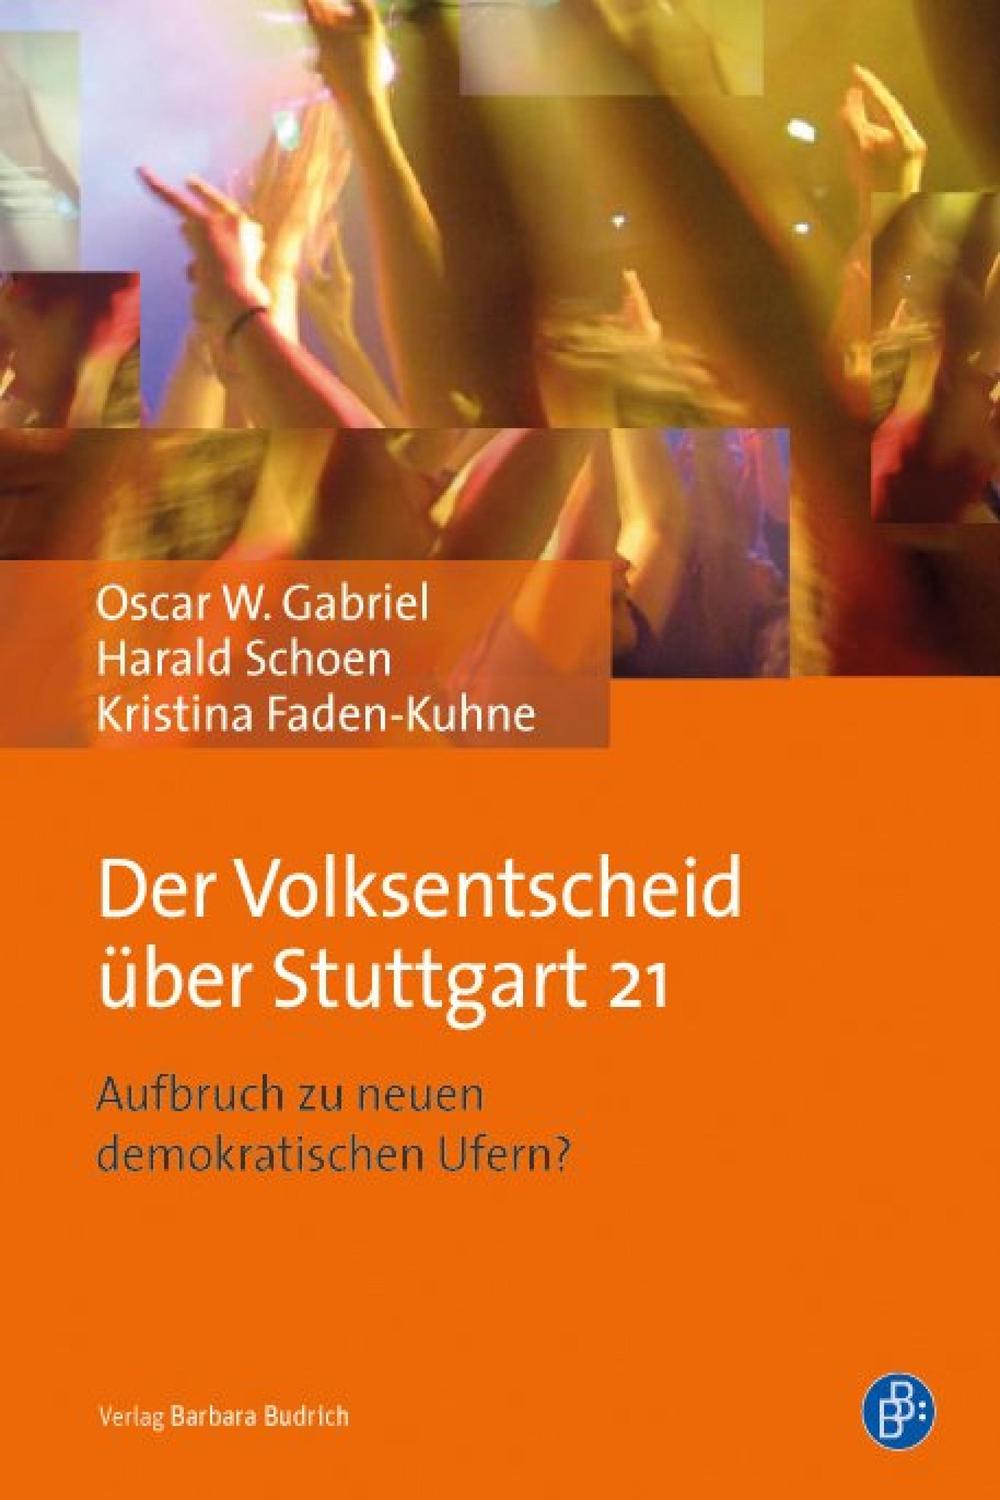 Der Volksentscheid über Stuttgart 21 - Oscar Gabriel, Harald Schoen, Kristina Faden-Kuhne